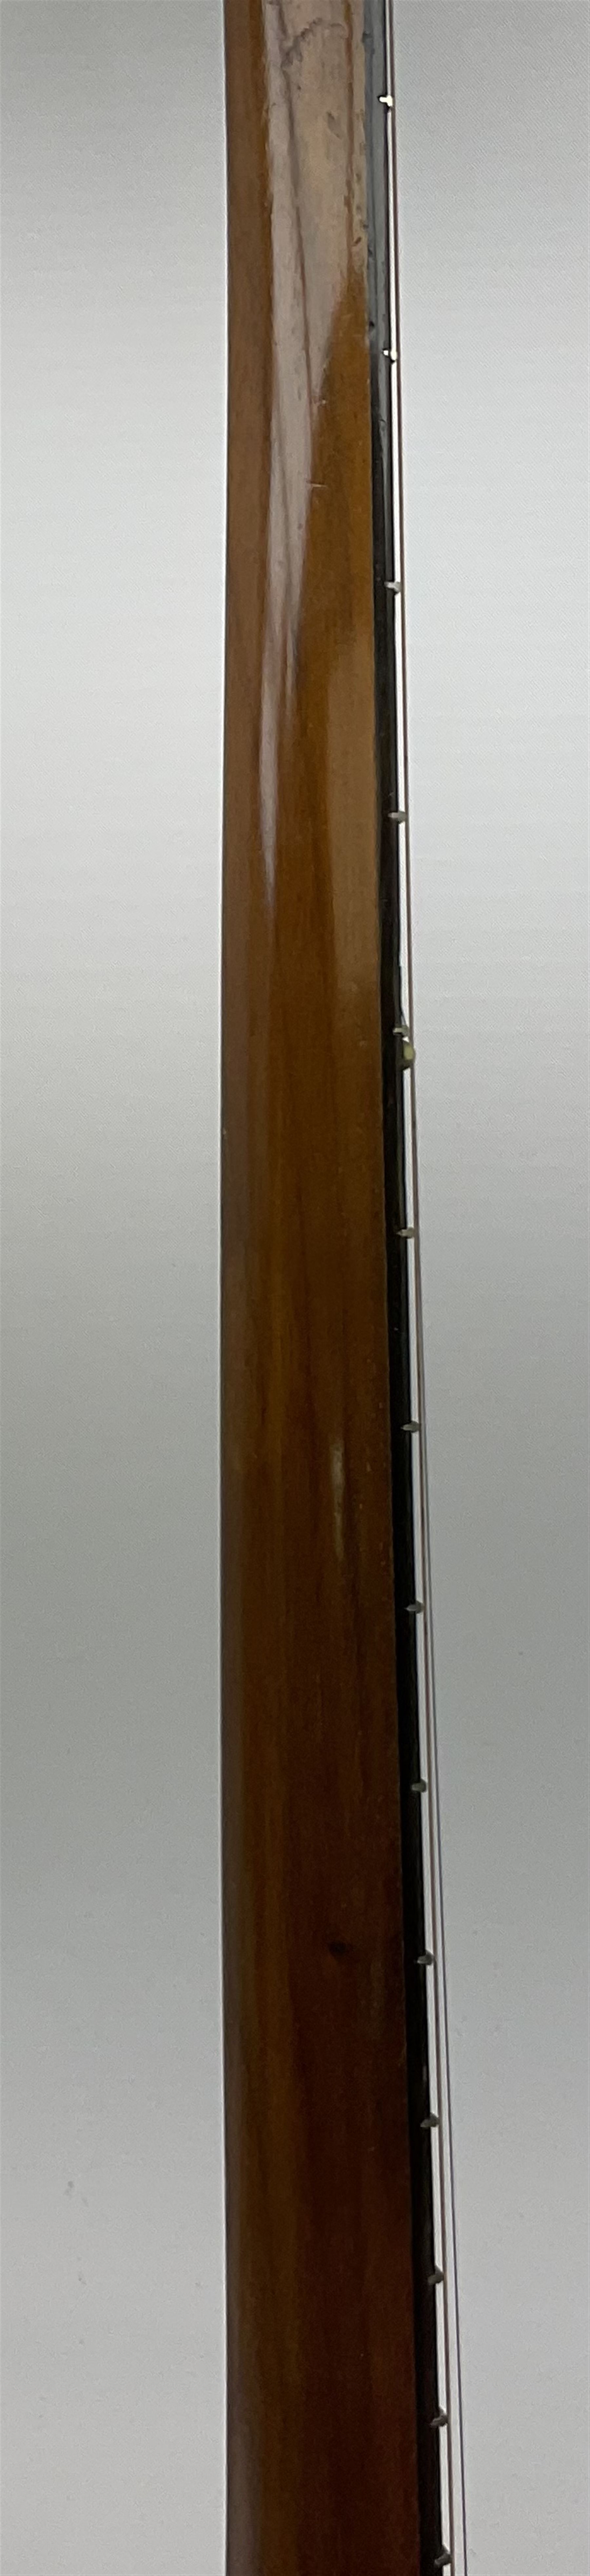 The Windsor Popular Model 5 five string closed back banjo - Image 17 of 21